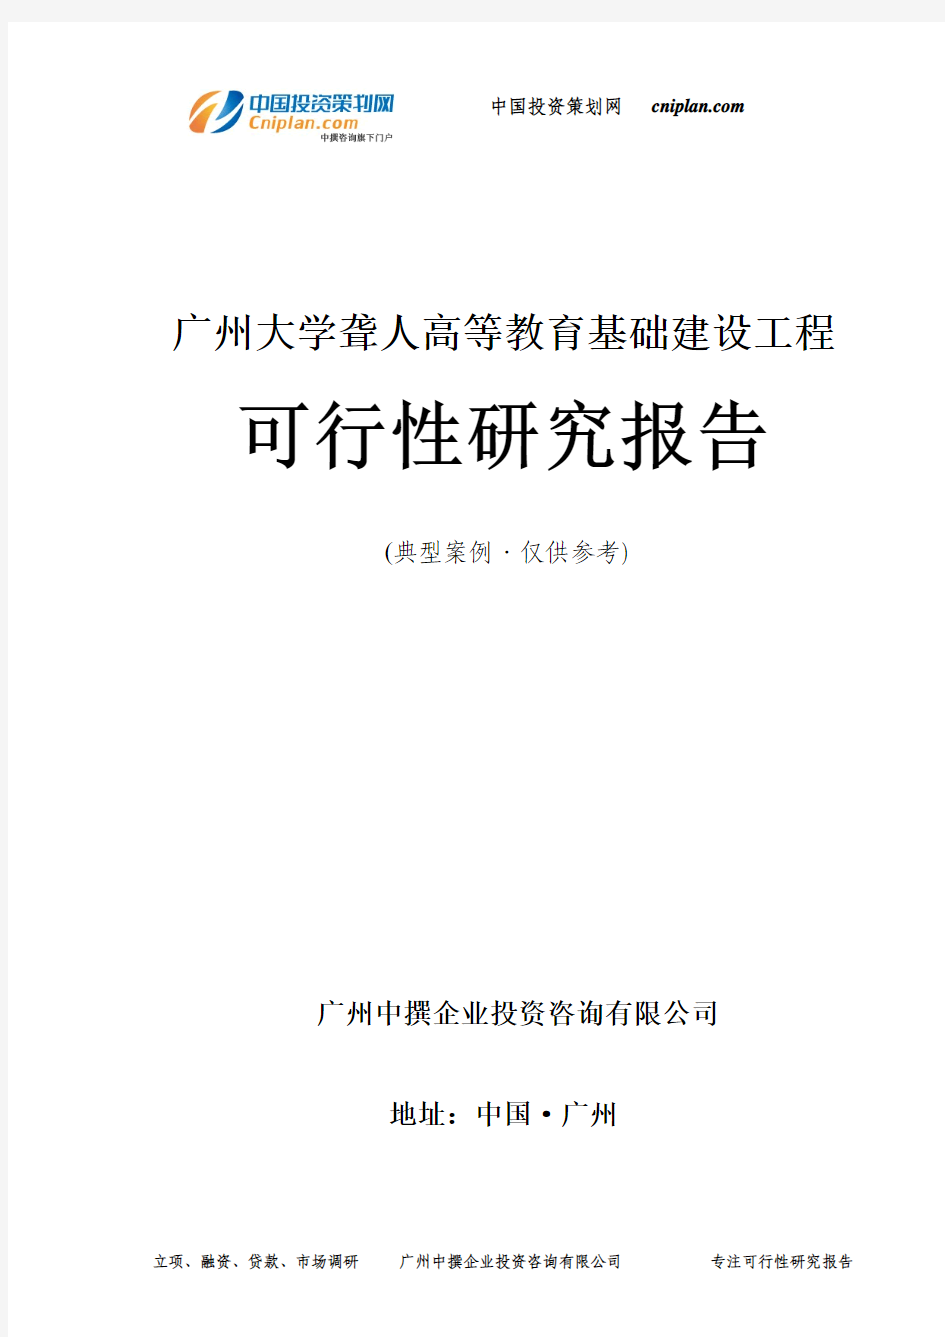 广州大学聋人高等教育基础建设工程可行性研究报告-广州中撰咨询